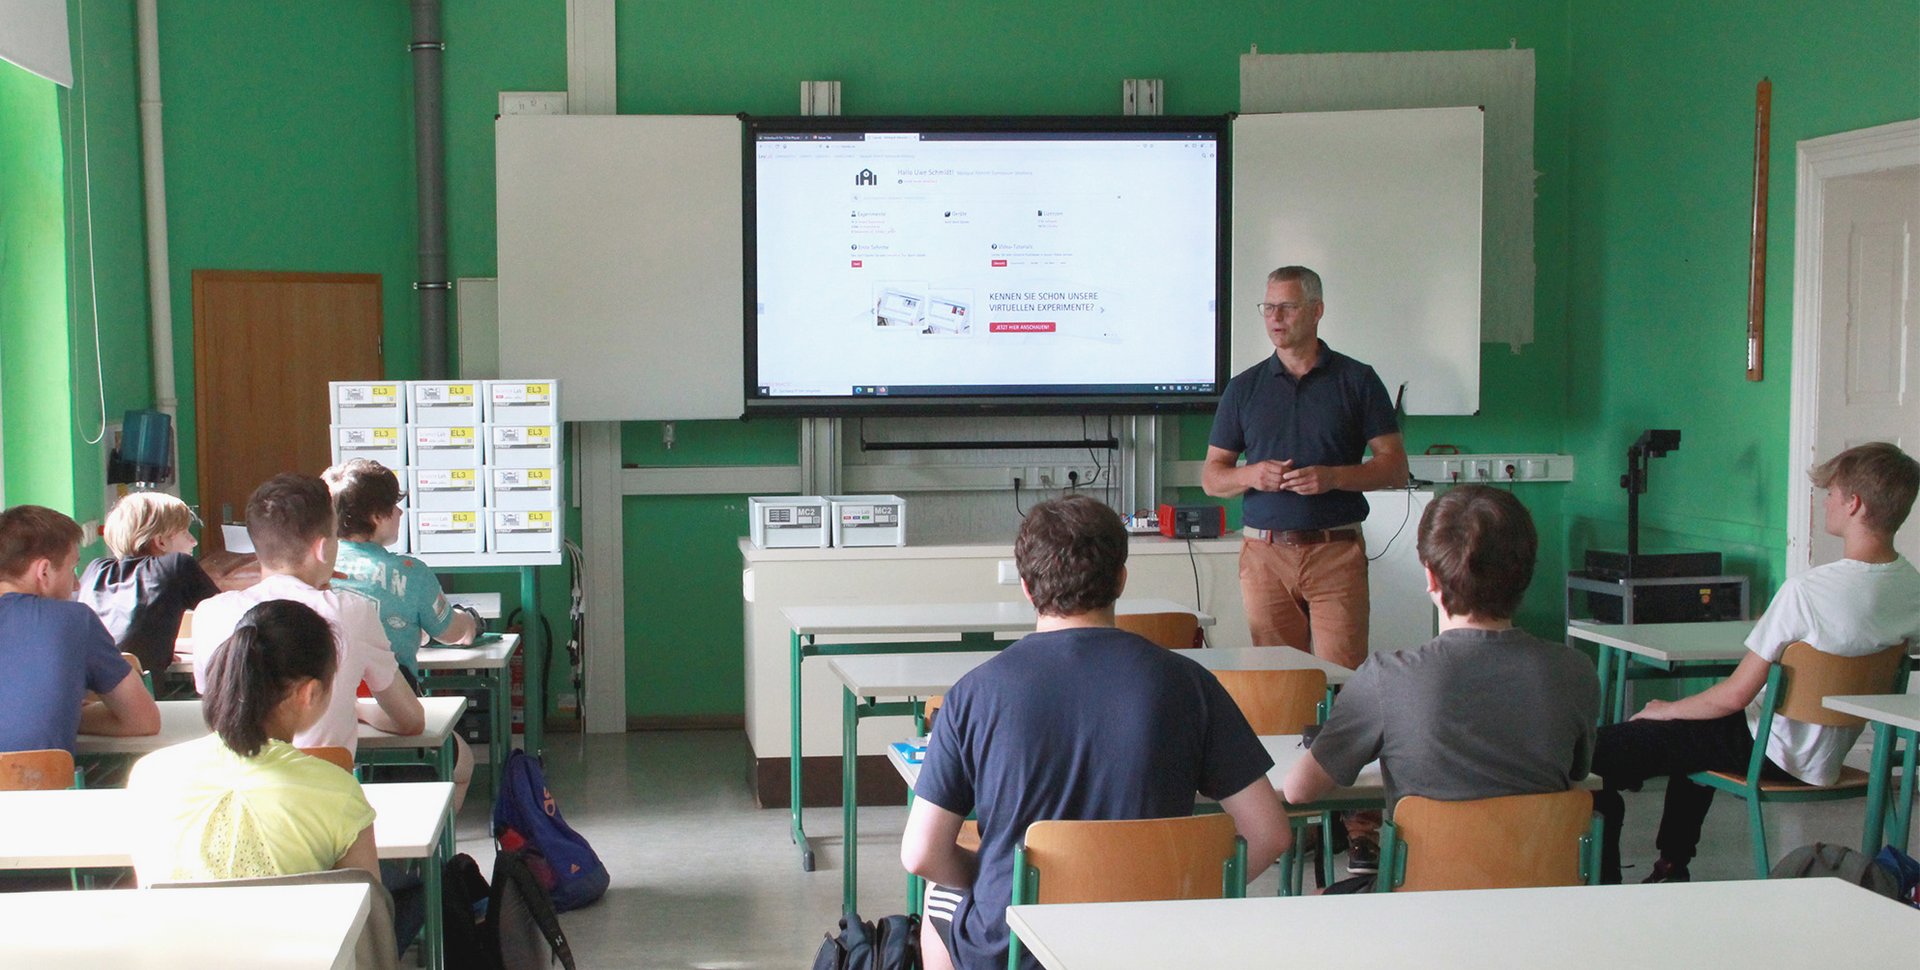 An dem Markgraf-Albrecht-Gymnasium in Osterburg findet in der Klasse digitaler Physikunterricht statt. Die Lehrkraft zeigt am Whiteboard den Science Lab Schülerversuch und teilt ihn per Lernplattform mit seinen Schülerinnen und Schülern.